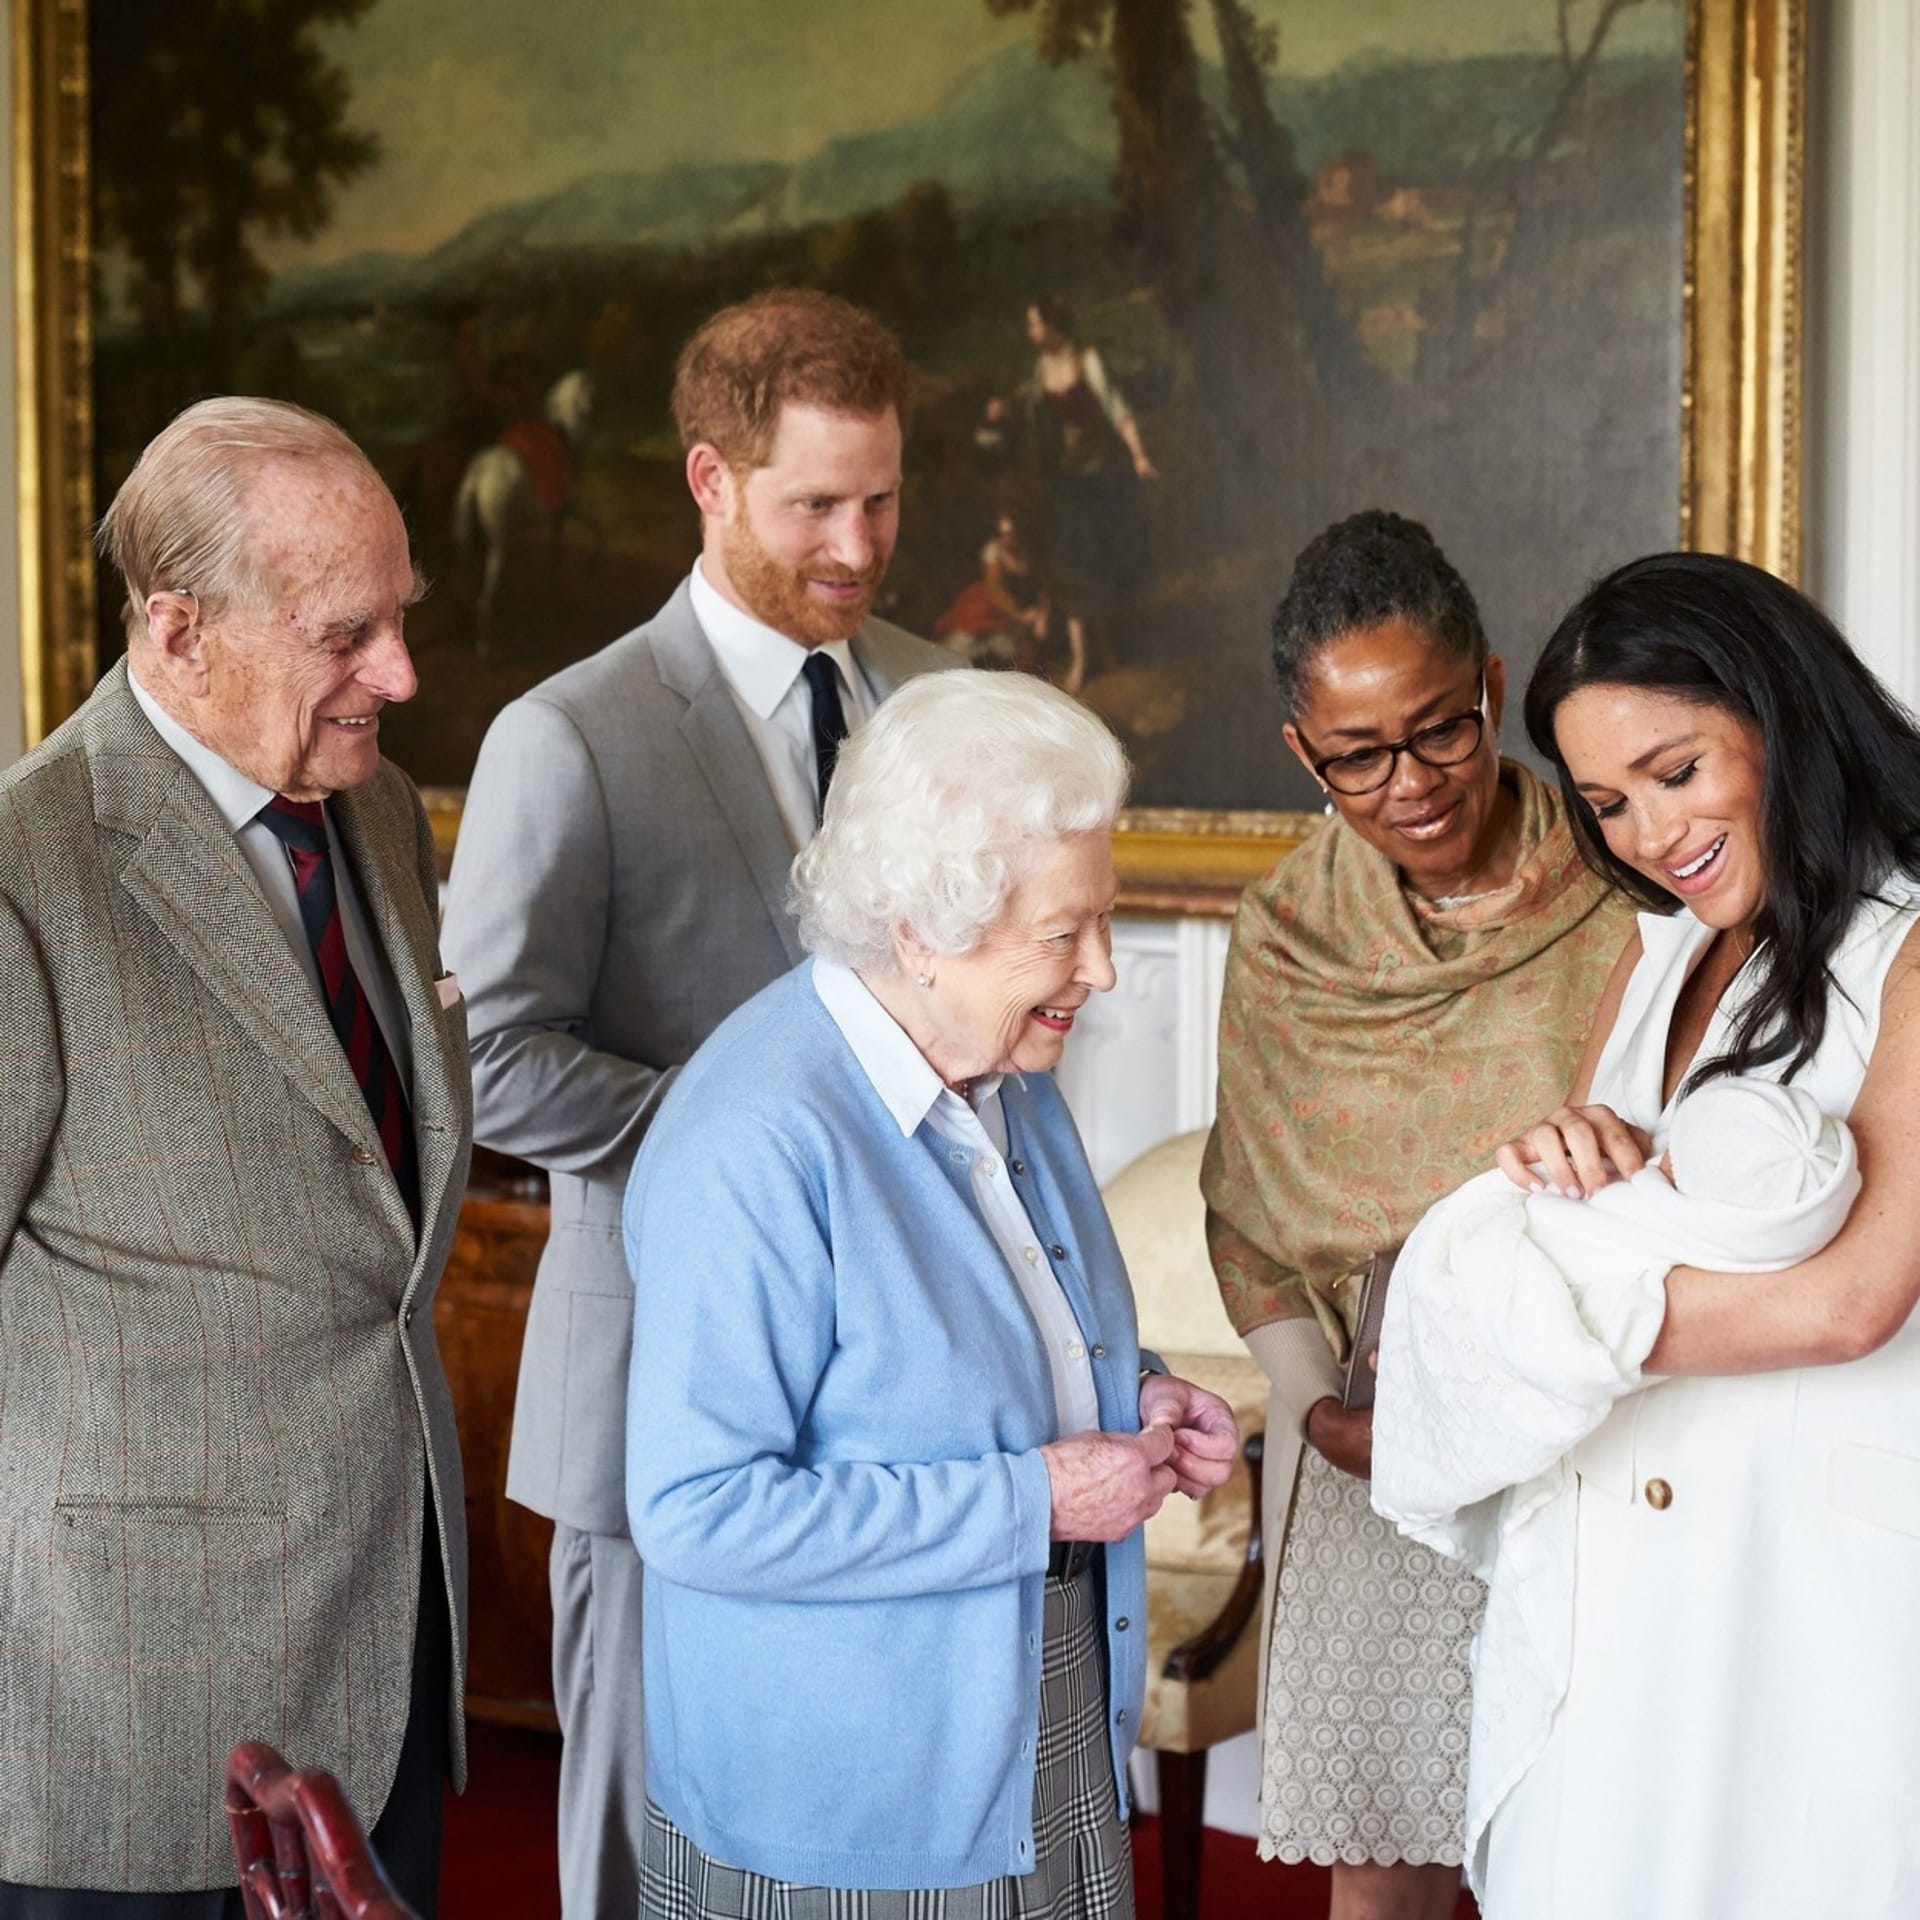 Královna zatím viděla naživo jen syna Harryho a Meghan Archieho.